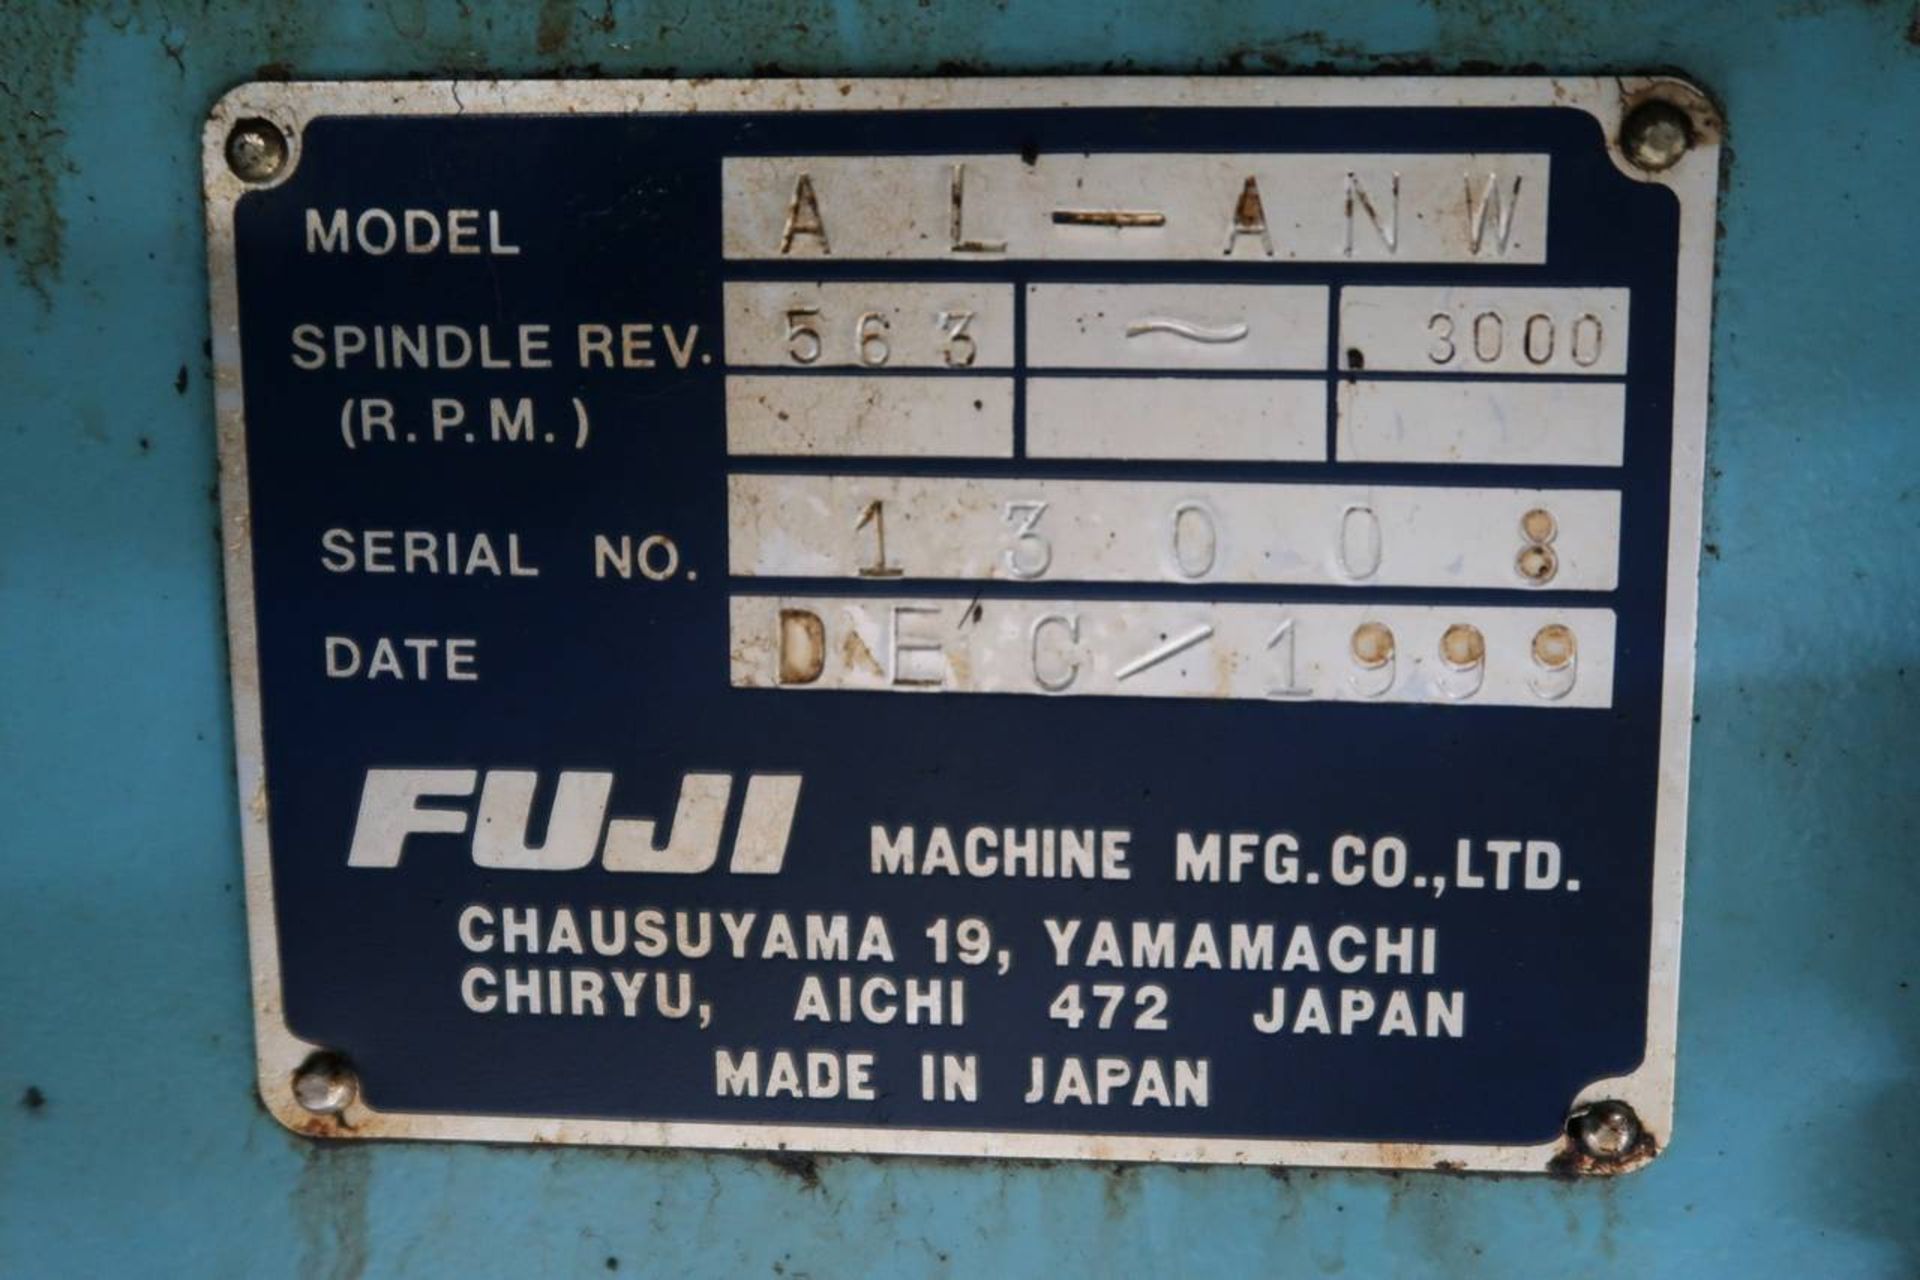 1999 Fuji ANW-41T CNC Lathe - Image 13 of 14